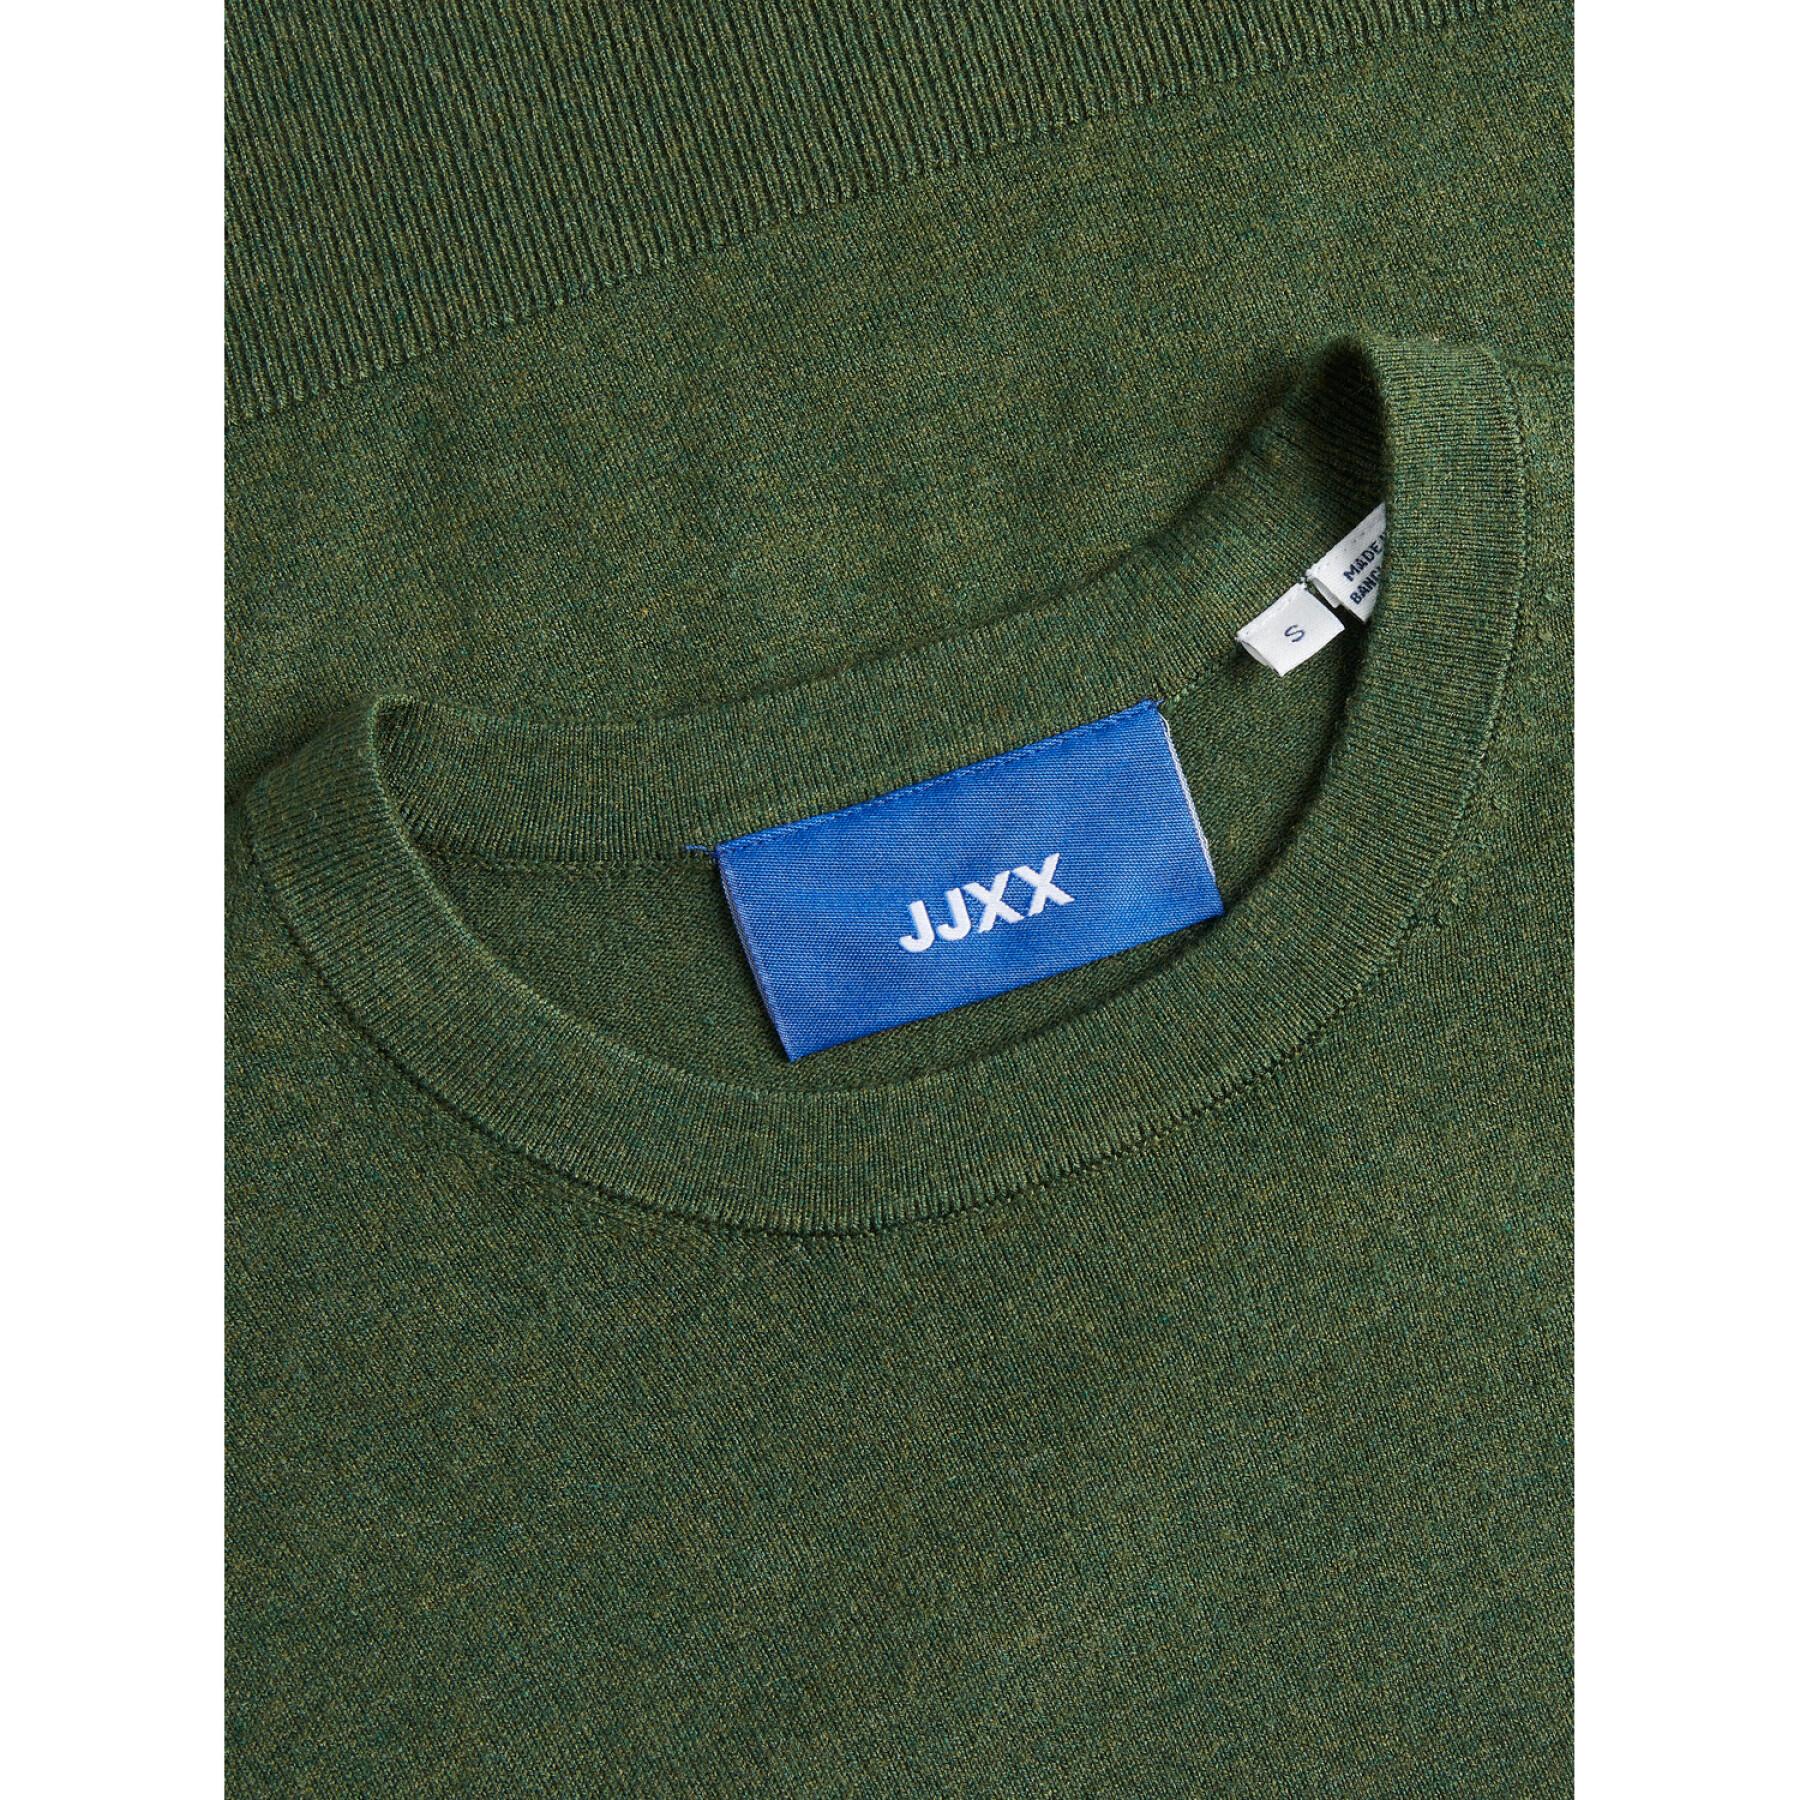 Jersey de mujer JJXX Lara Soft Knit Noos